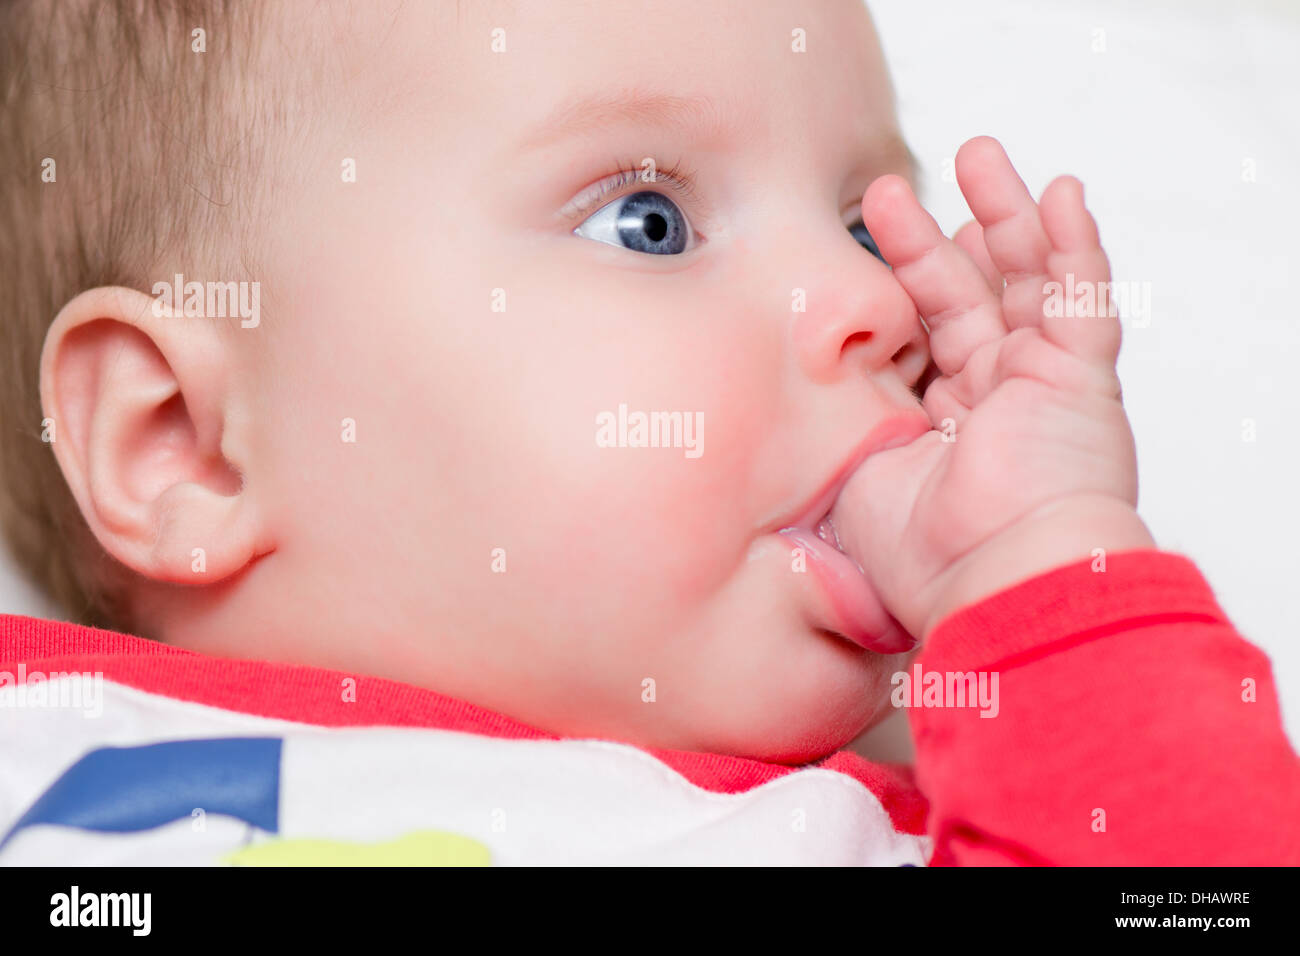 Bambino di sei mesi succhiare il pollice - dentizione Foto Stock